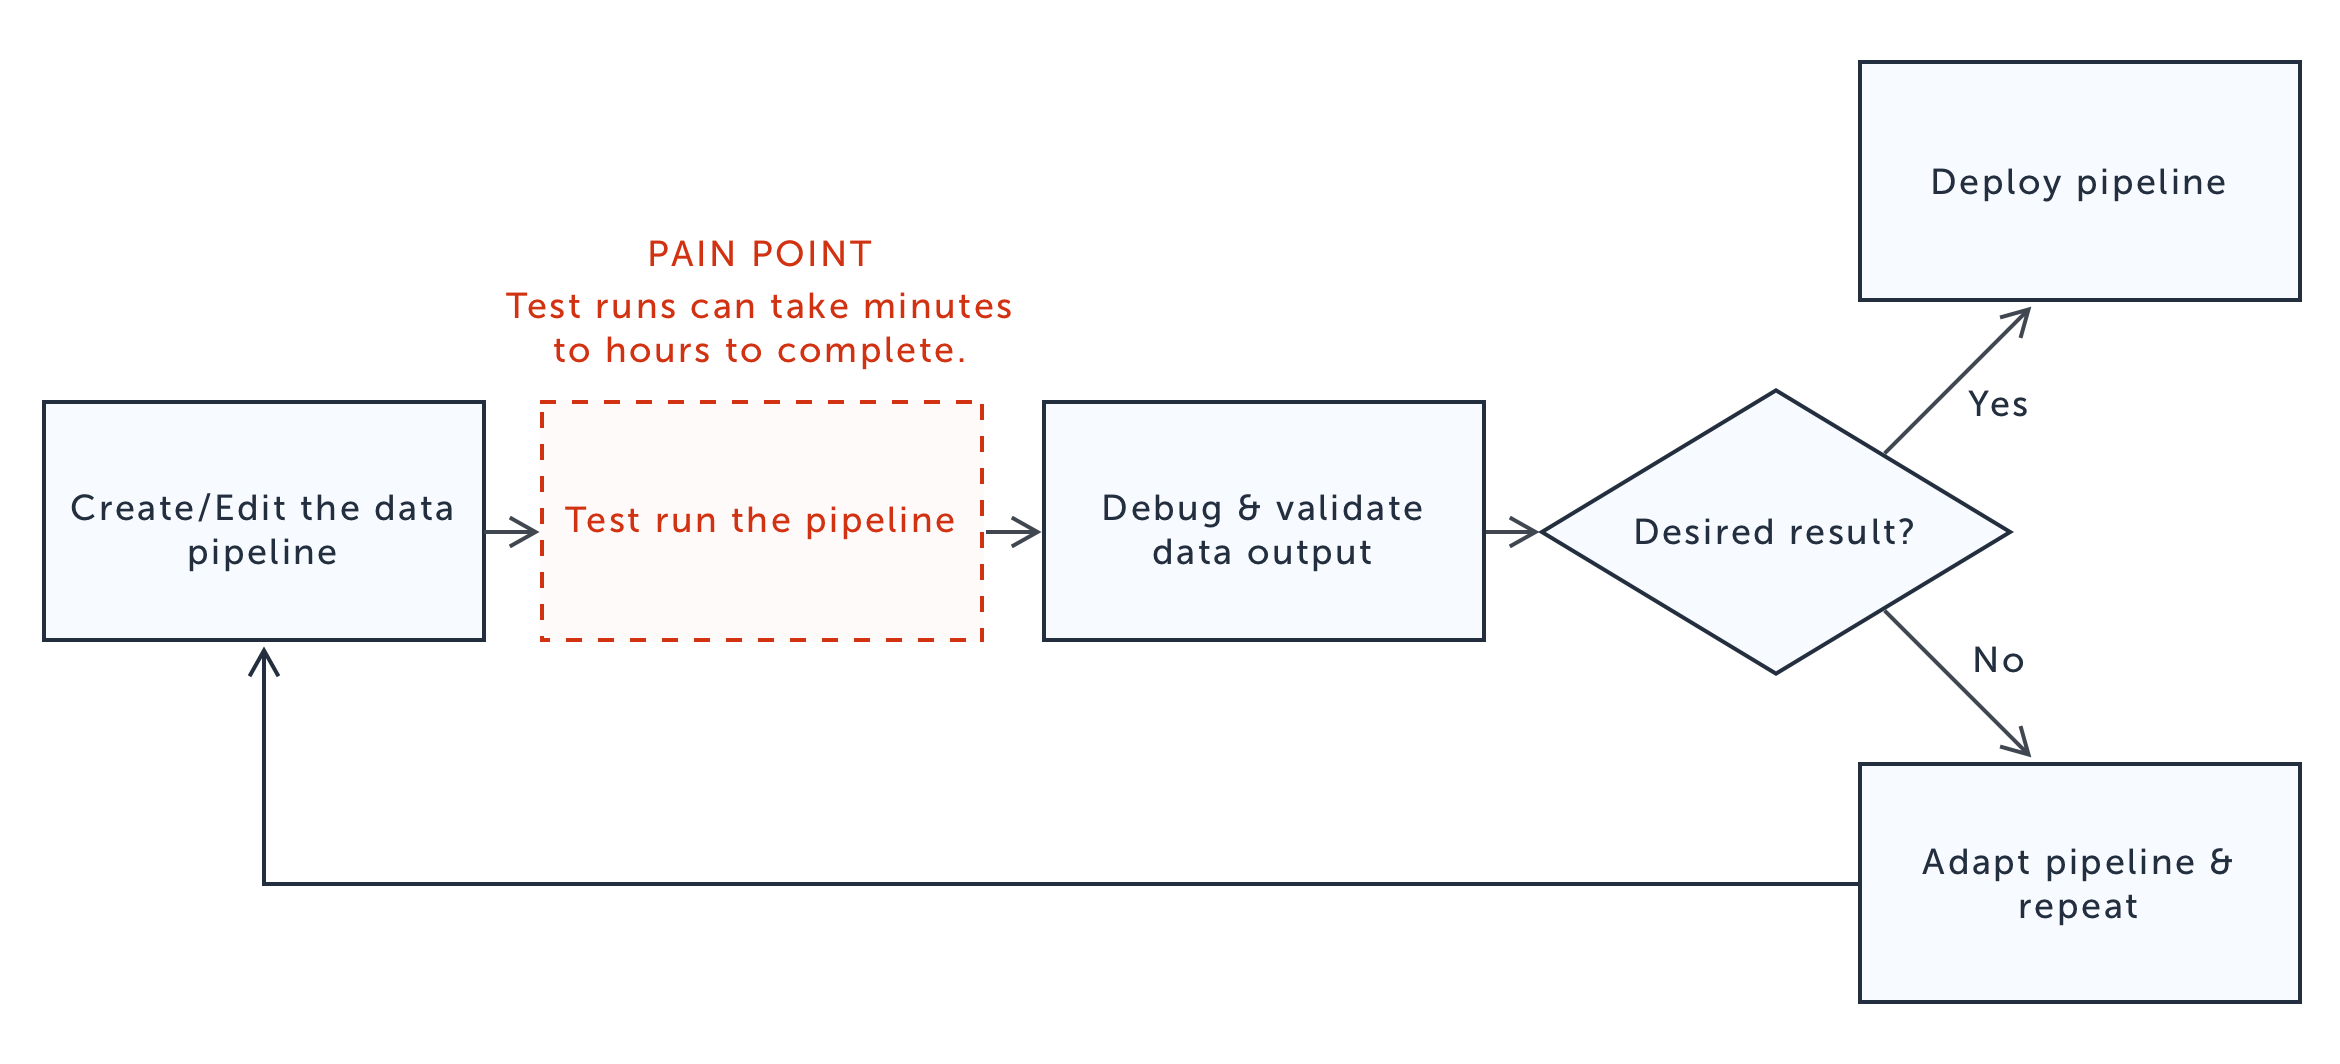 pain-point-diagram